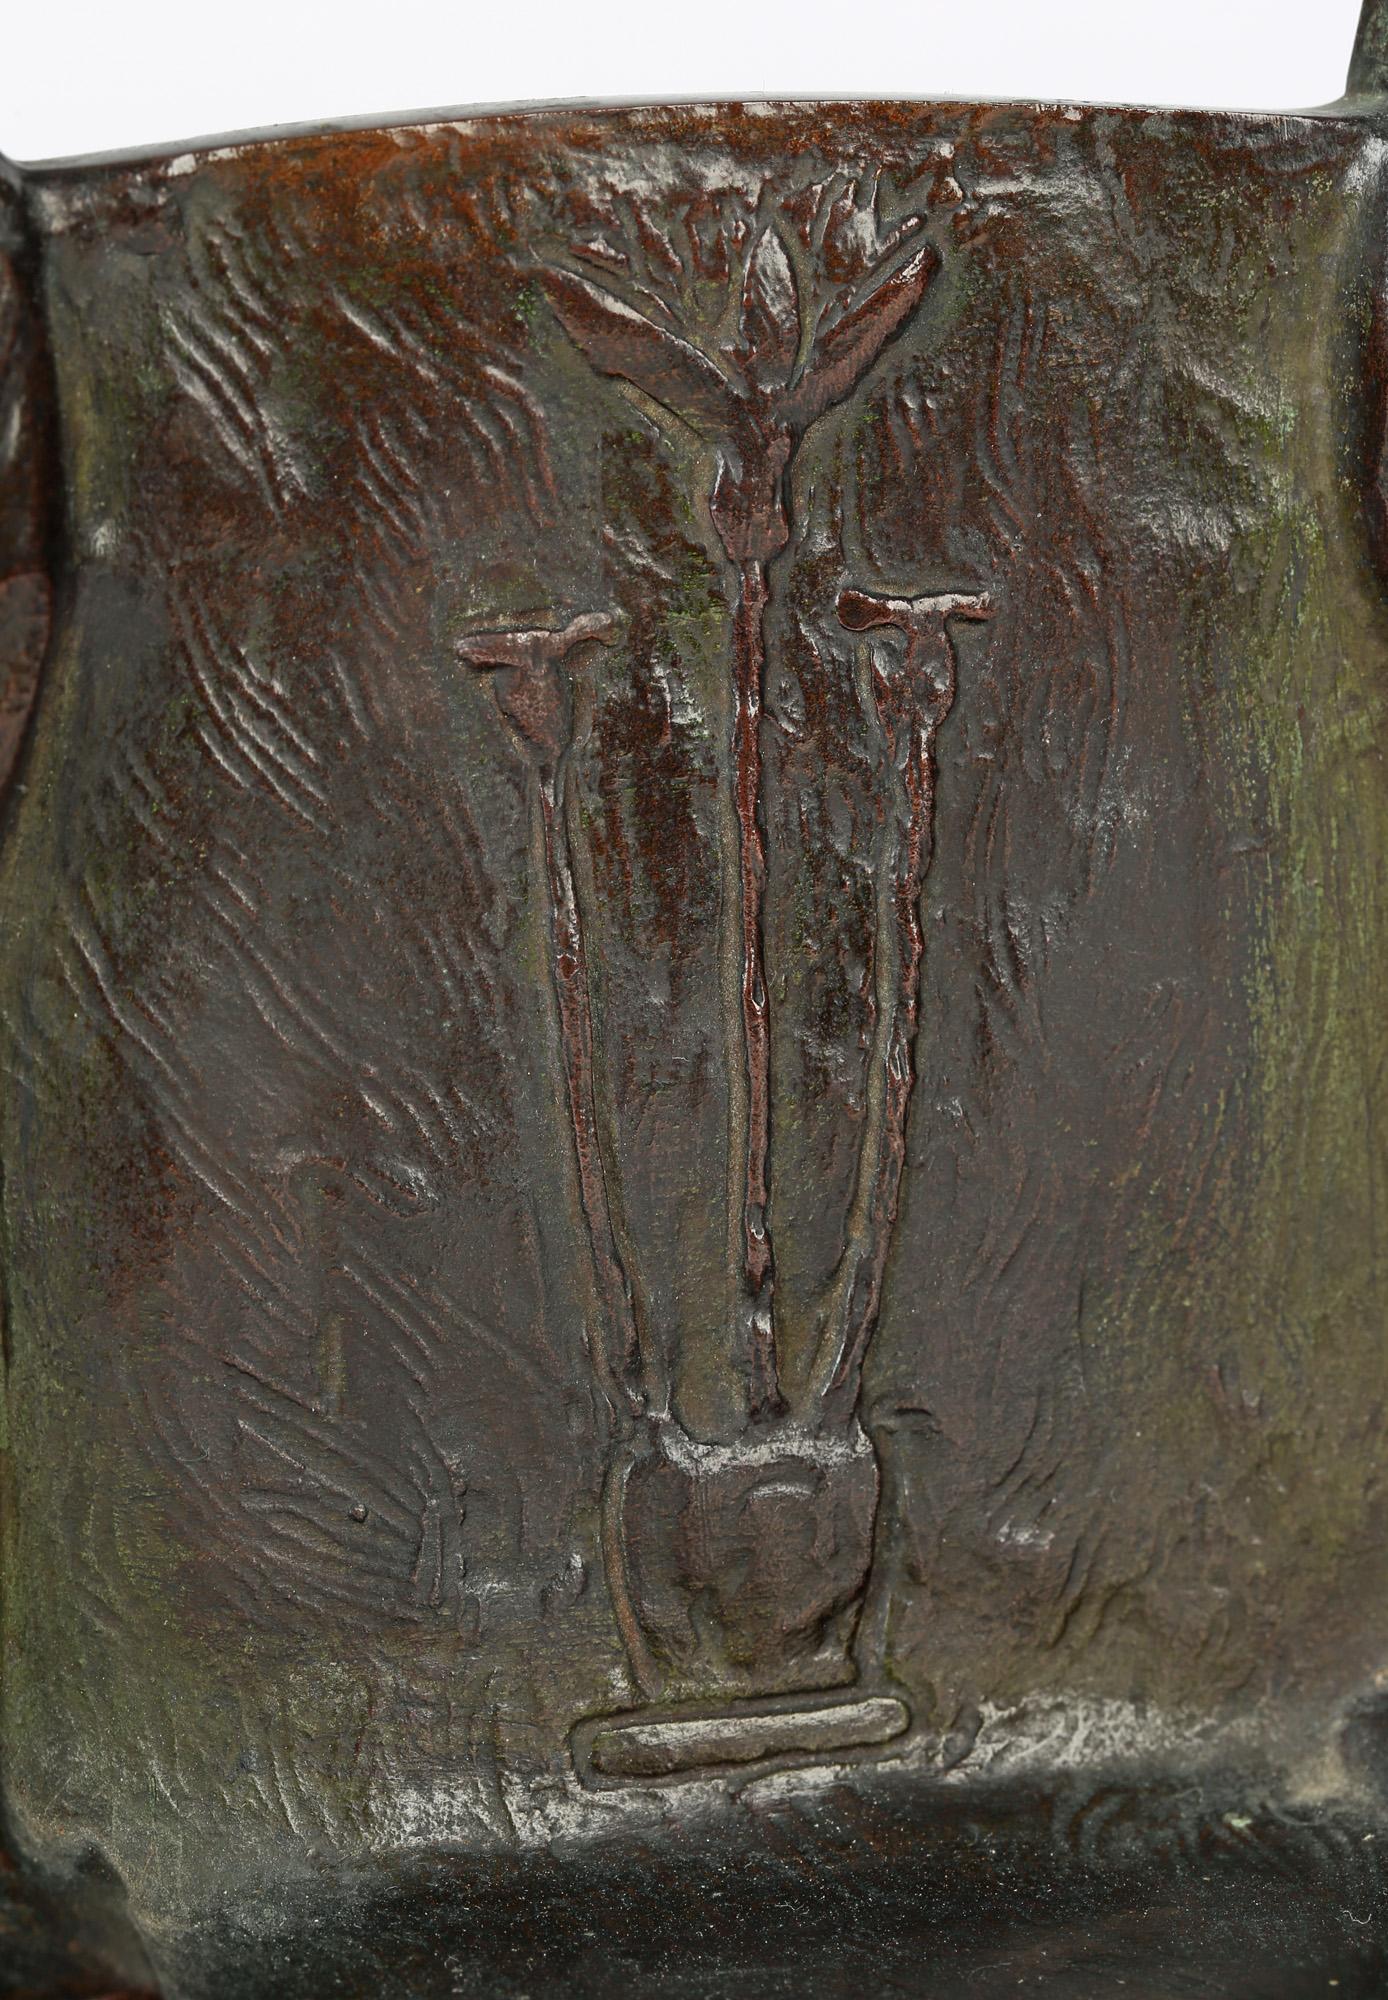 Exceptionnelle paire de serre-livres en bronze de style néo-égyptien américain par M Carr, datant d'environ 1910. Les serre-livres fortement moulés ont une base de forme plate montée avec deux colonnes moulées de momie égyptienne supportant un